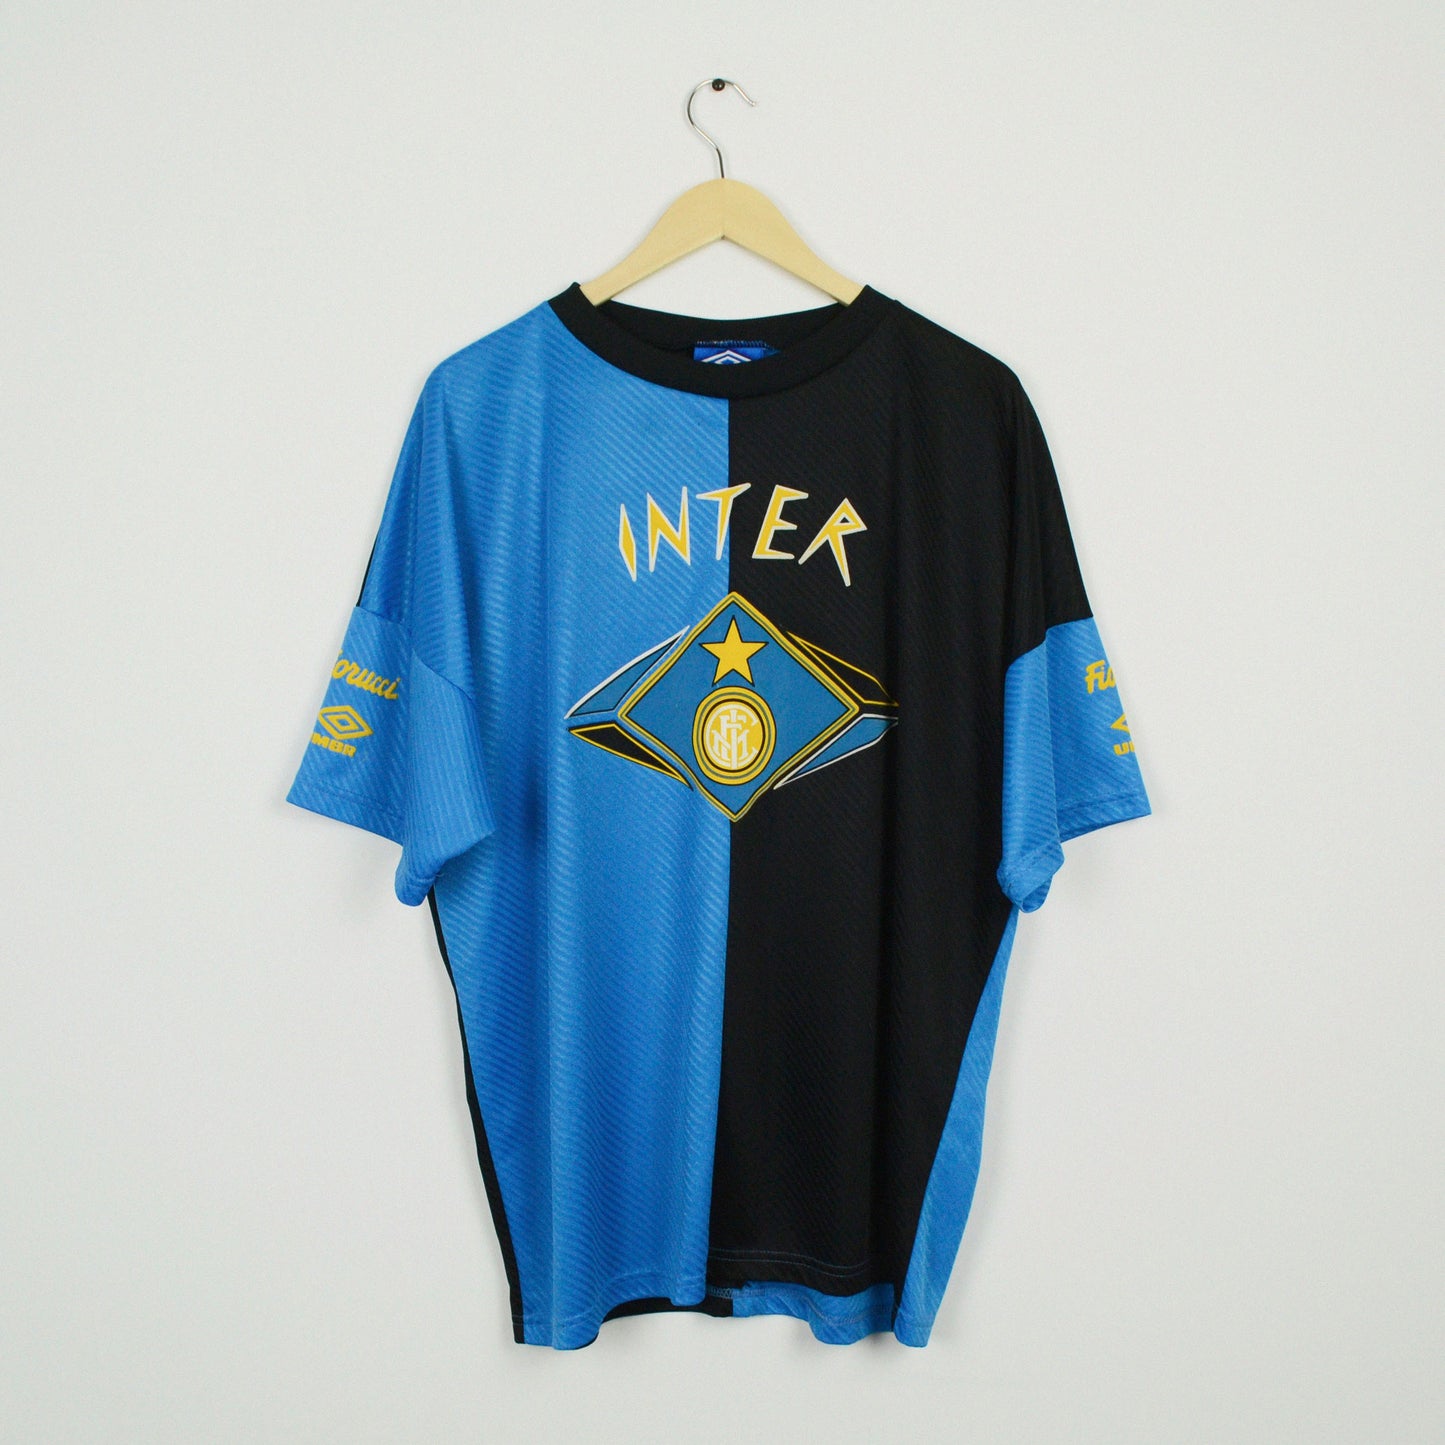 1993-95 Umbro Inter Milan Leisure Shirt XL